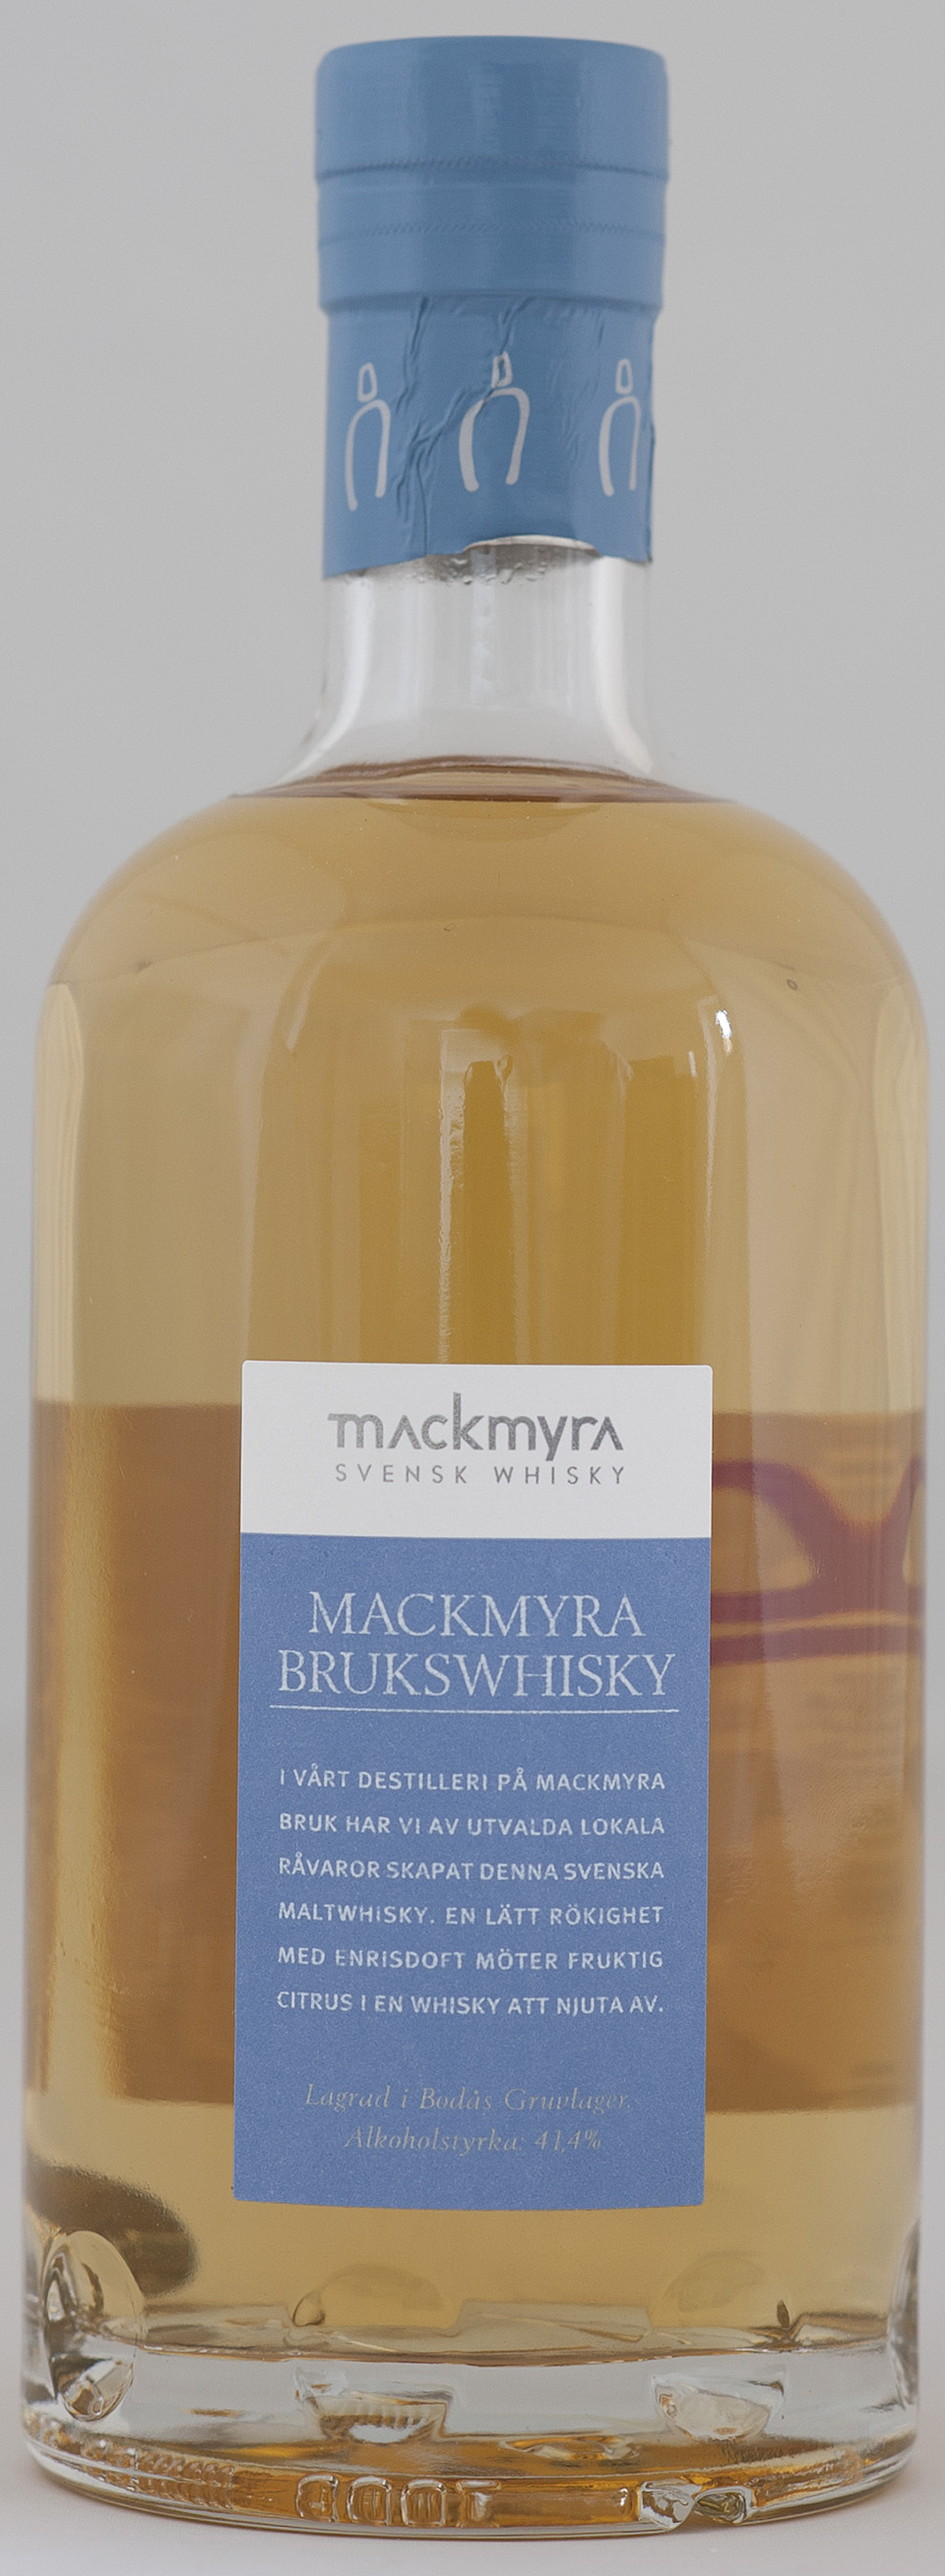 Billede: _DSC5632 Mackmyra Brukswhisky - bottle.jpg